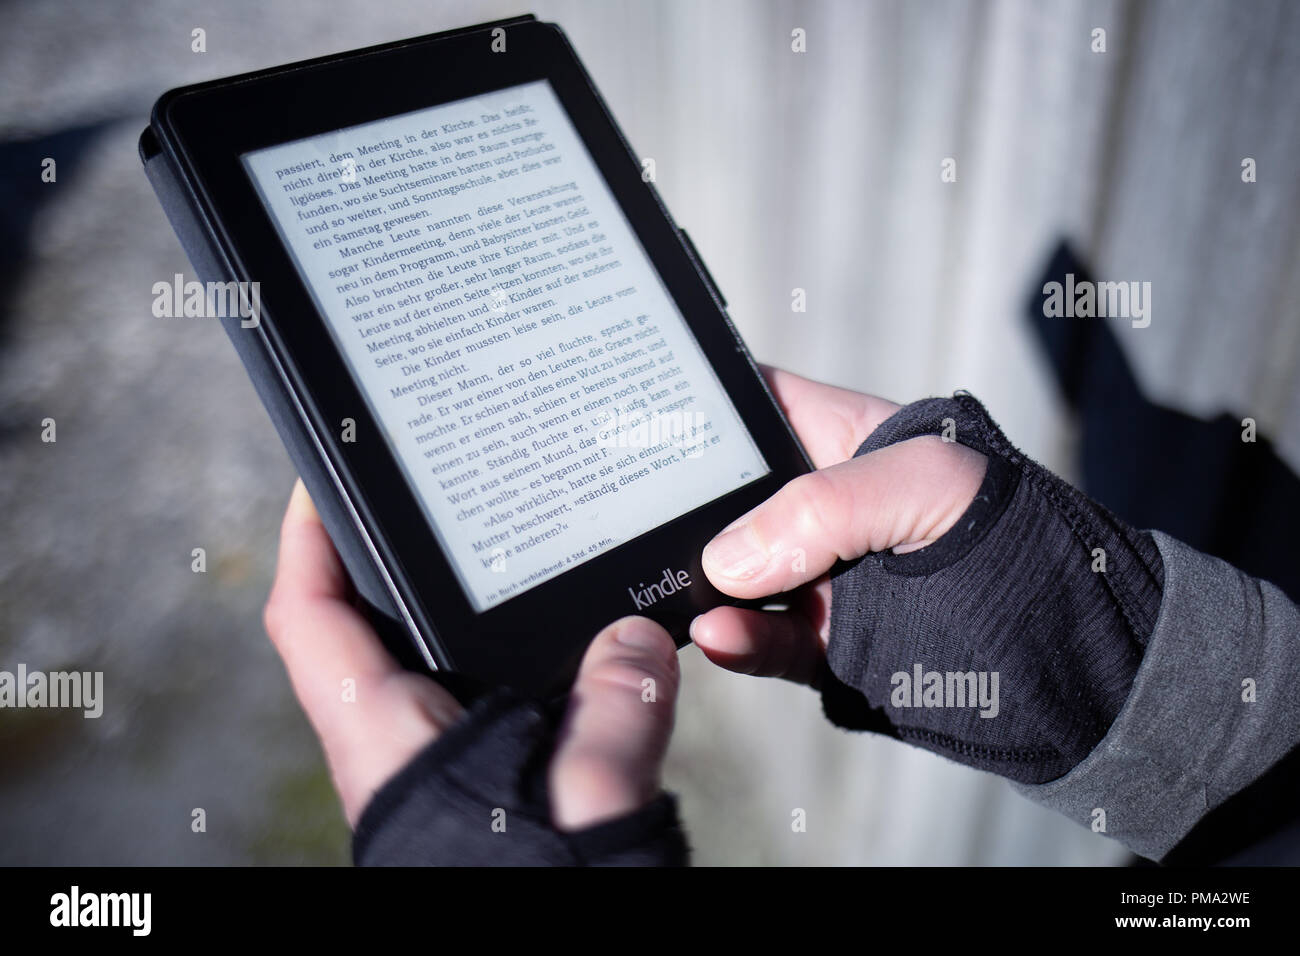 Un  Kindle ebook reader sur une étagère avec des livres de poche.  C'est le Kindle 3 modèle. Pour un usage éditorial uniquement Photo Stock -  Alamy